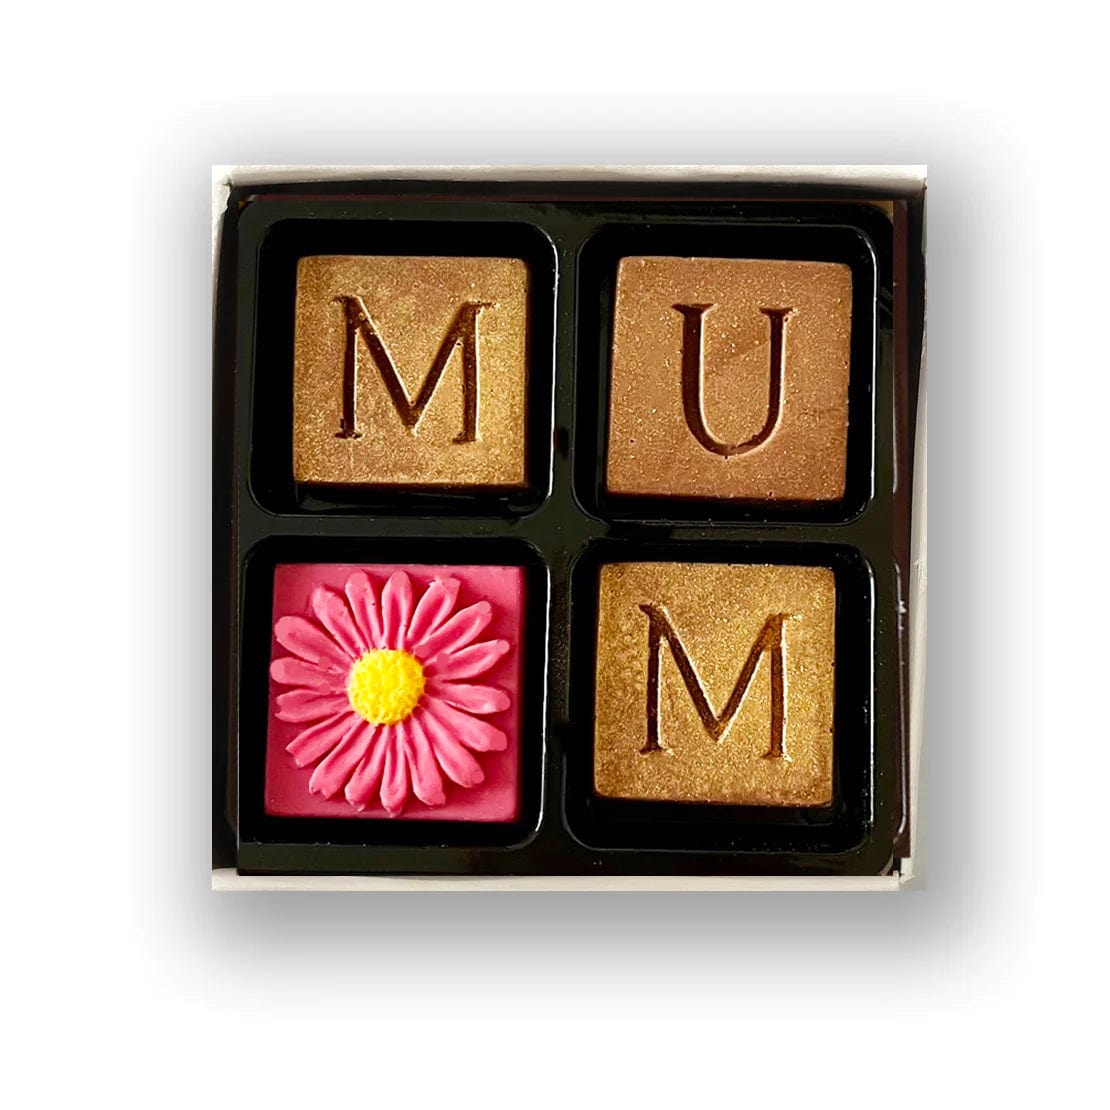 Choc on Choc Mum Chocolate Box